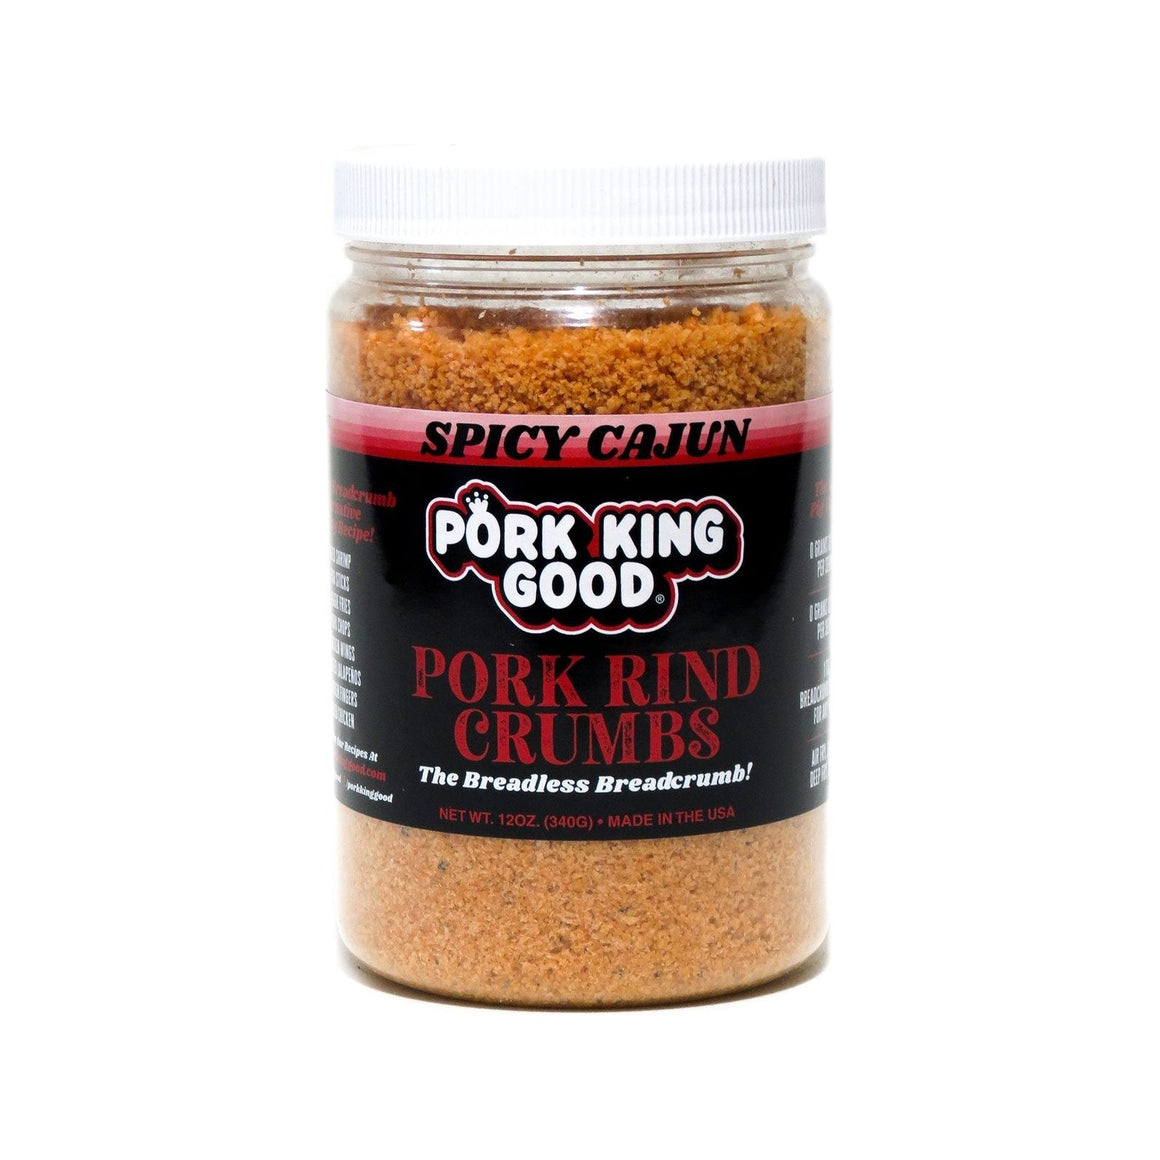 Pork King Good - Miettes de couenne de porc - Cajun épicé - Pot de 12 oz